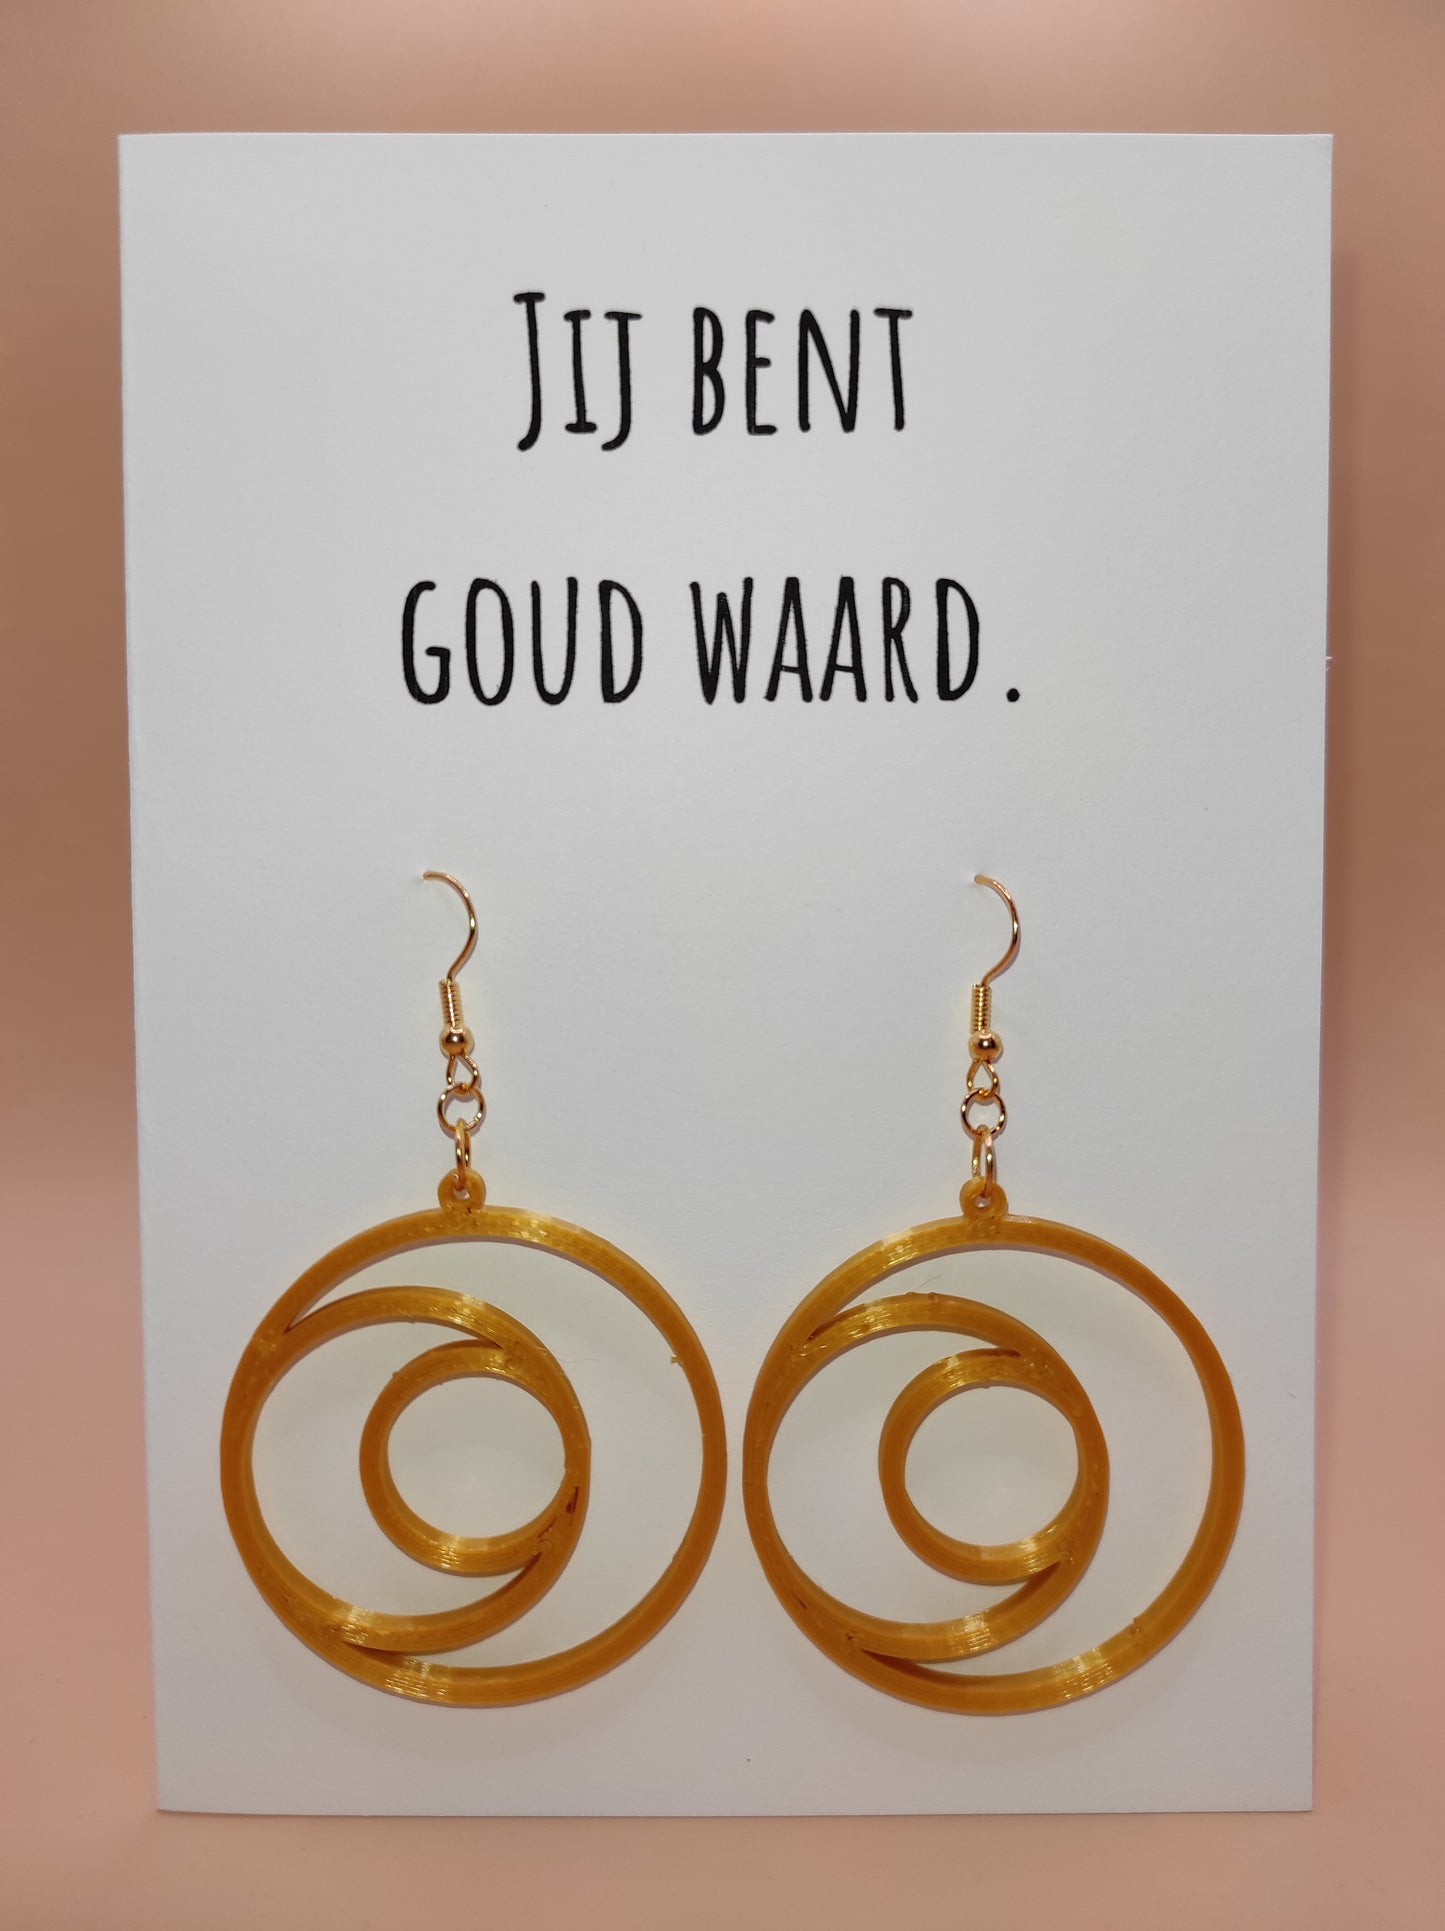 Wenskaart met oorbellen. GIftcard with earrings.